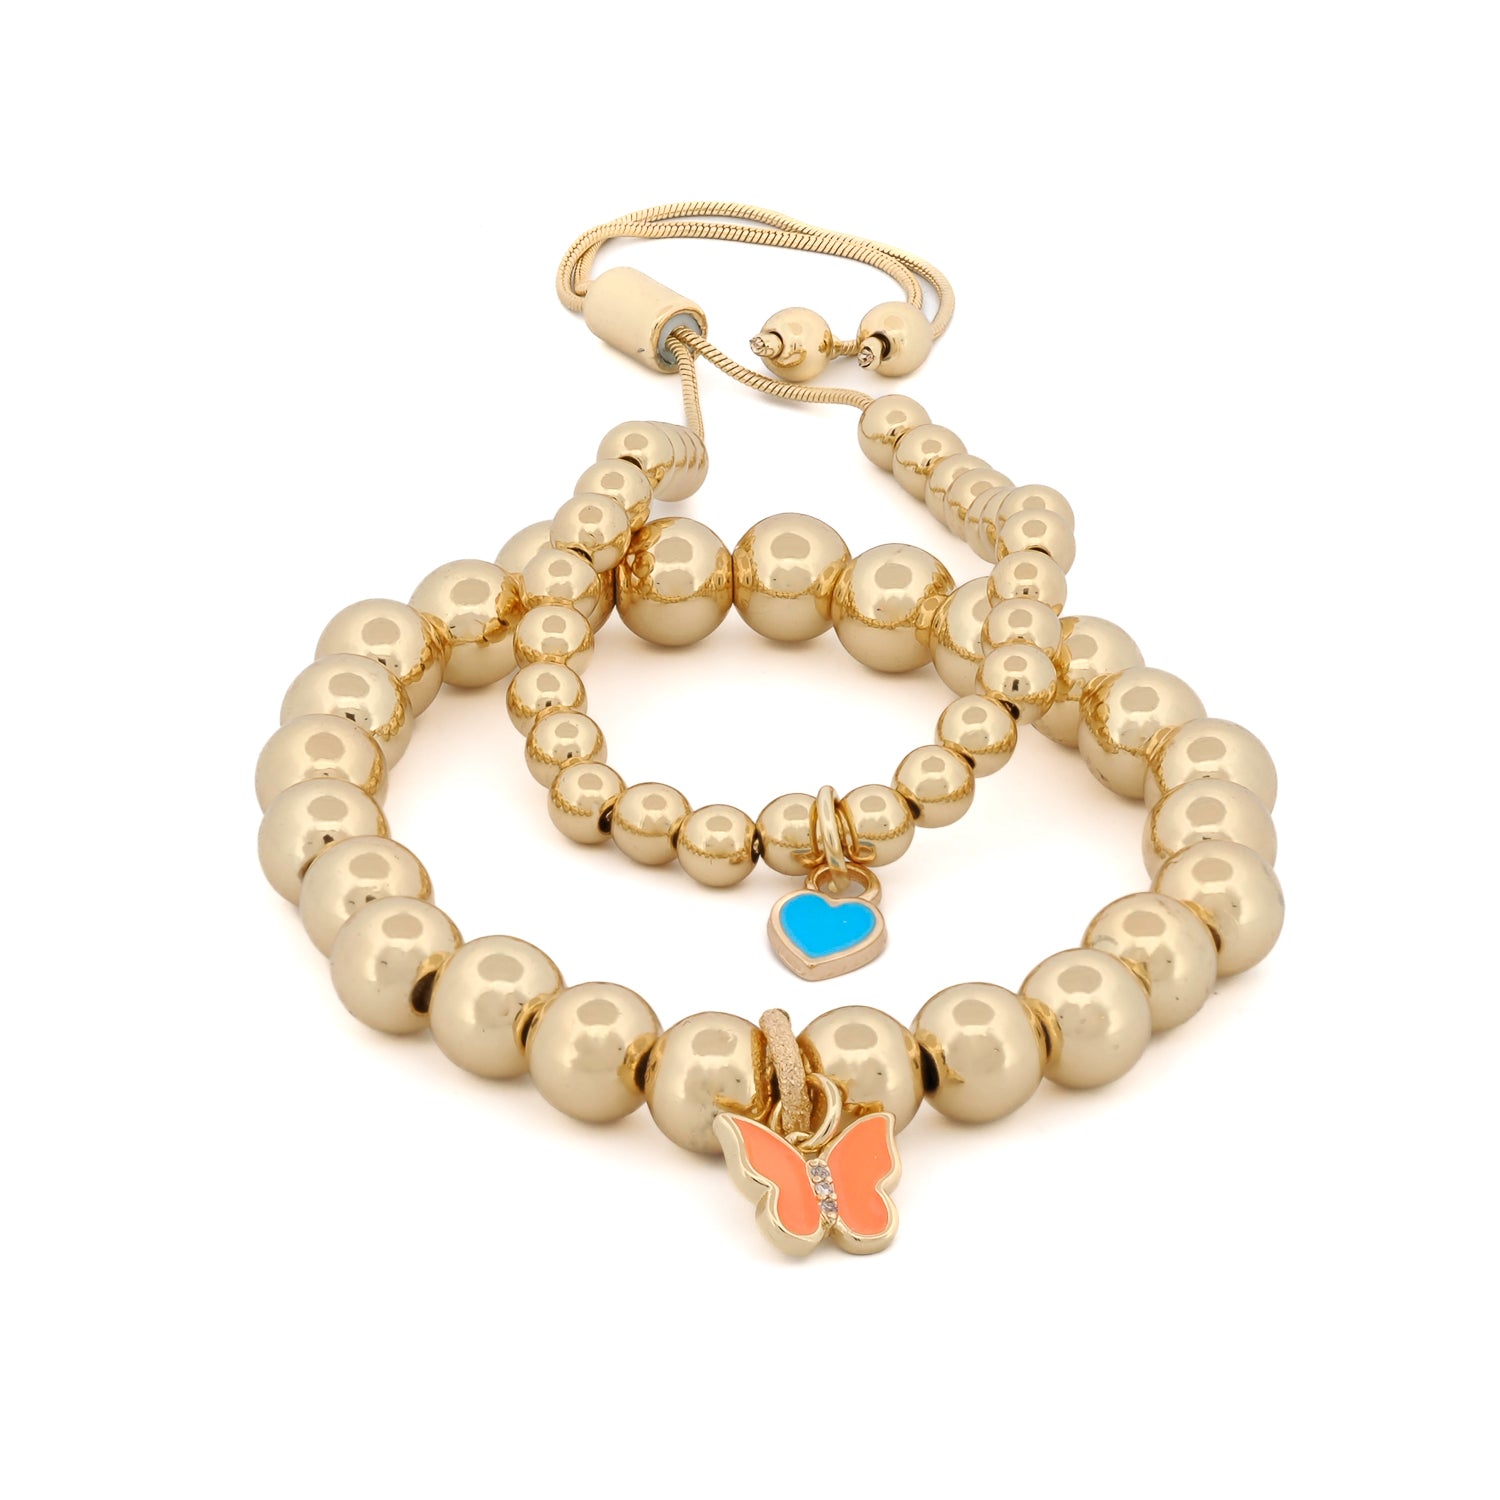 Joyful Orange Butterfly & Blue Heart Charm Bracelet Set